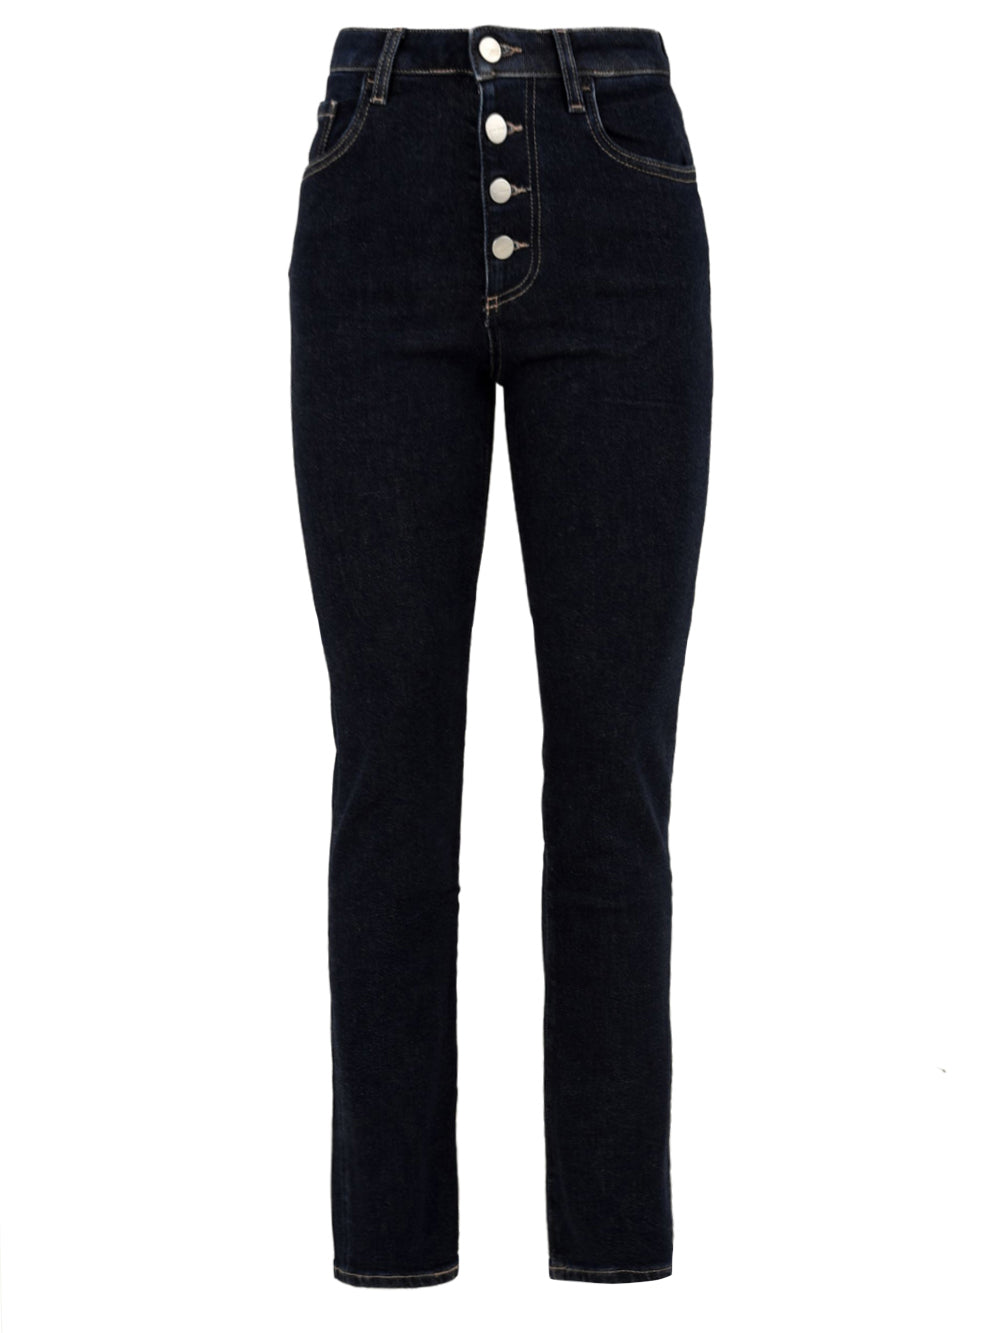 Immagine frontale del jeans blu scuro da donna modello Nana X firmato Icon Denim Los Angeles con chiusura a bottoni,tasche laterali e gamba stretta.